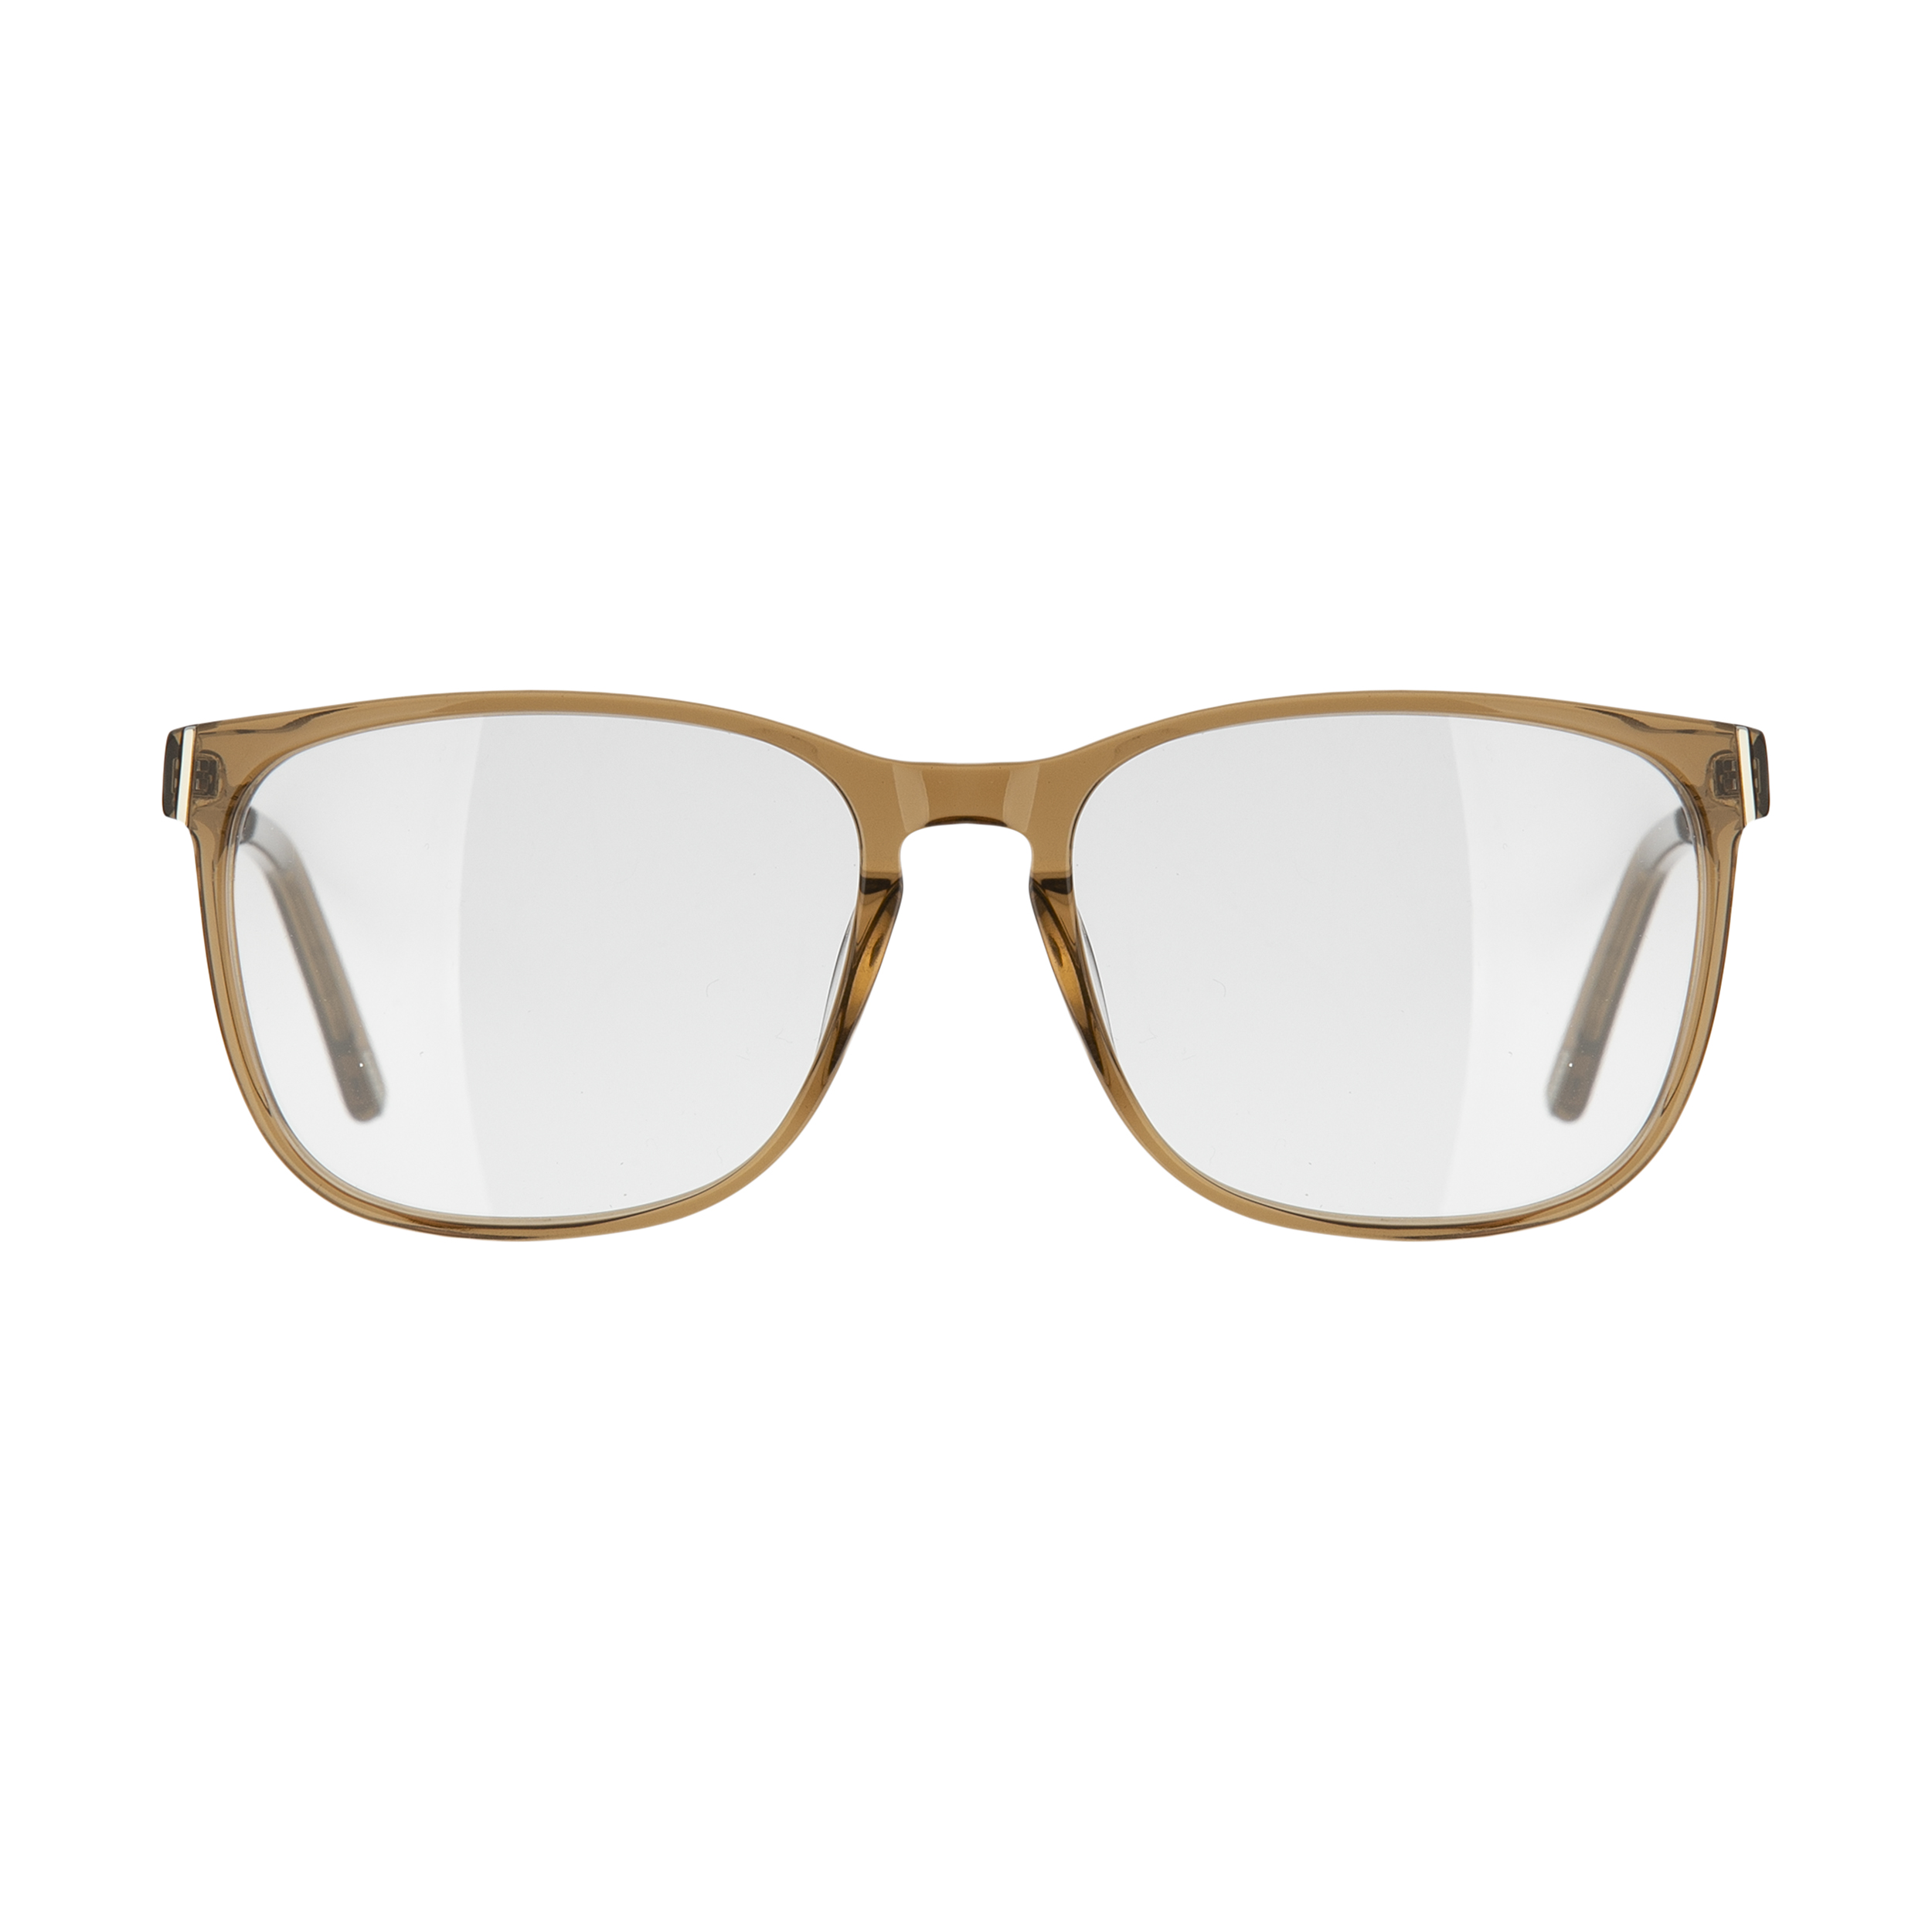 فریم عینک طبی ماسائو مدل 13169-551